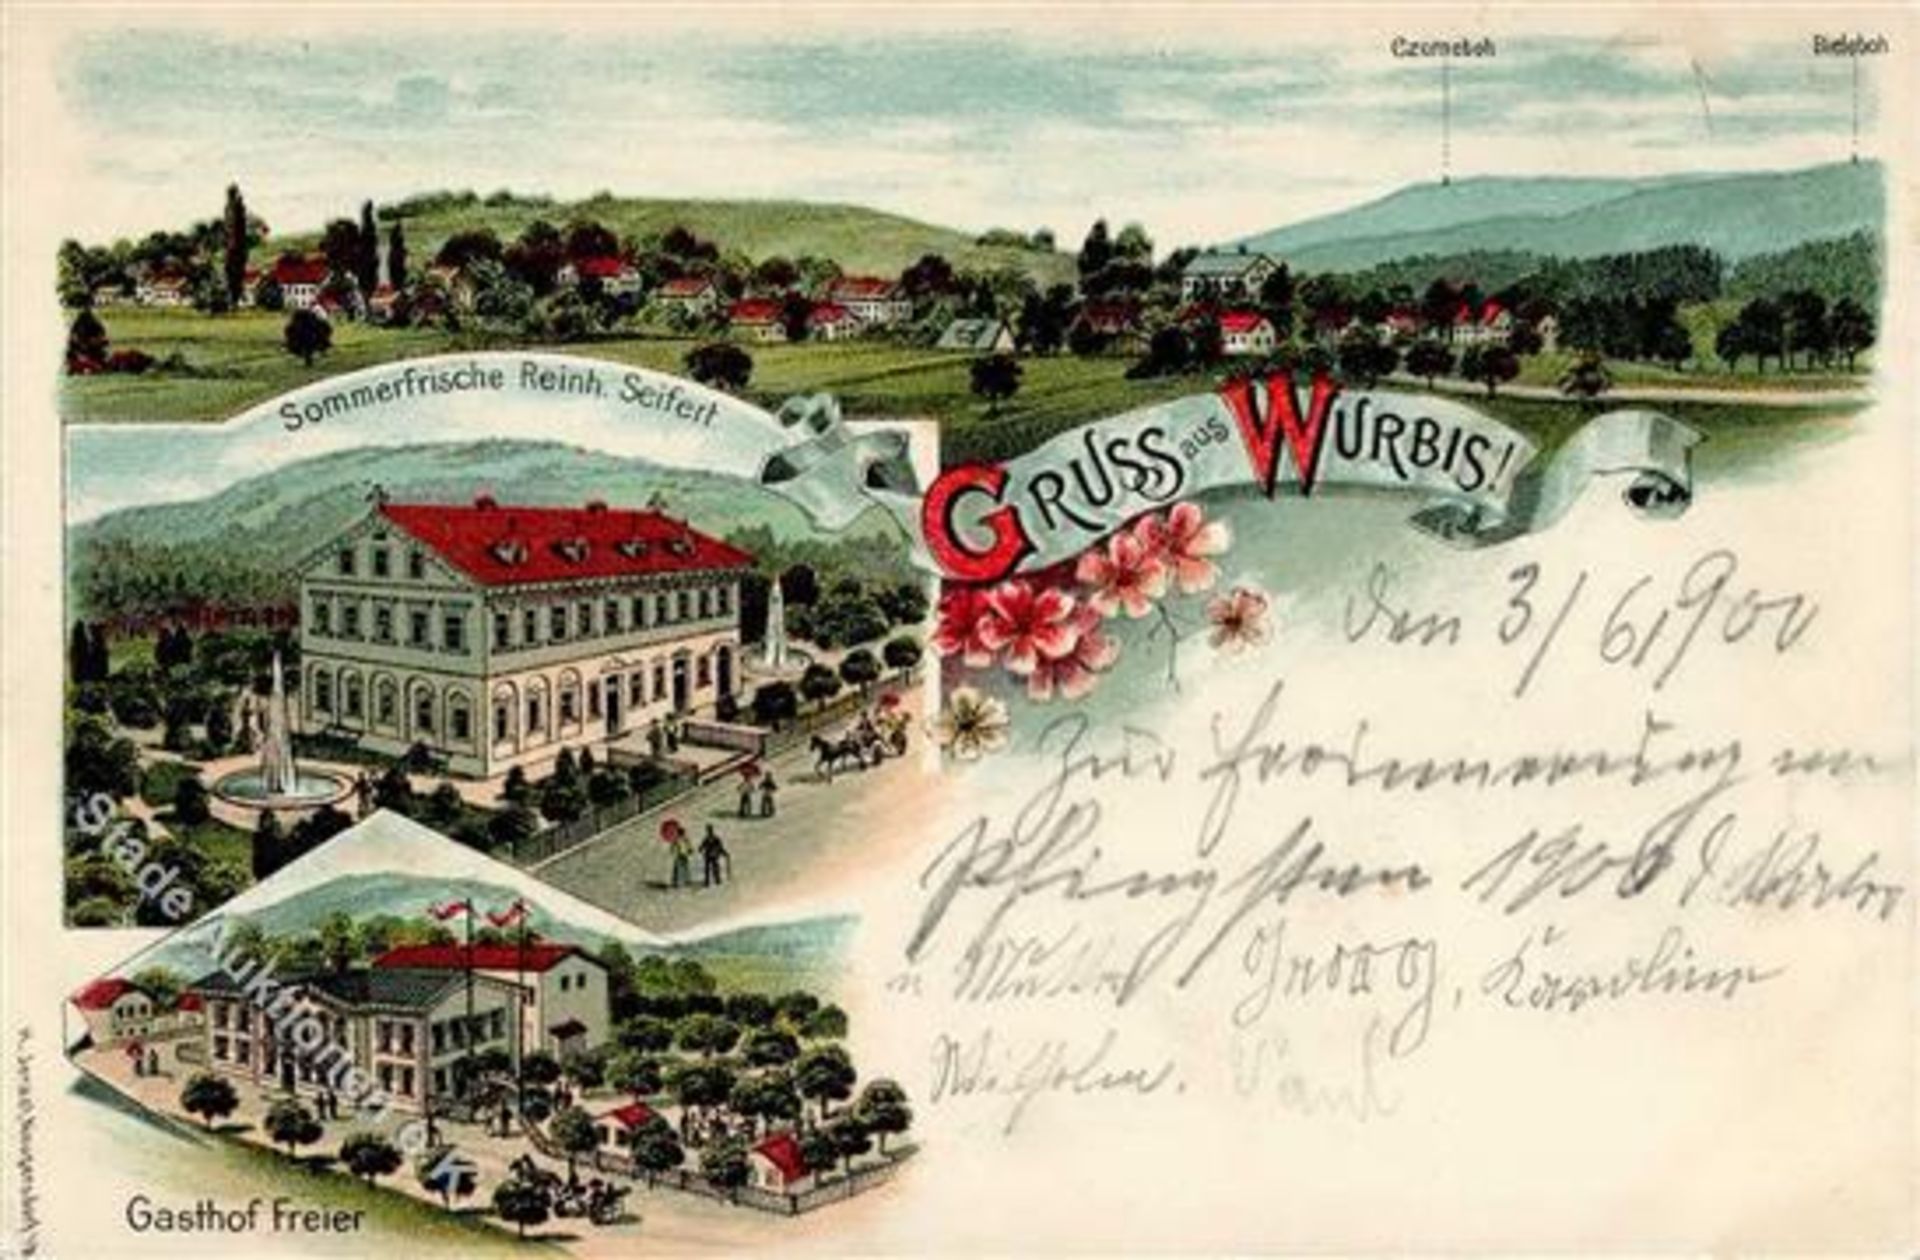 Wurbis (O8601) Gasthaus Seifert Gasthaus Freier 1900 I-II (Ecken abgestossen)Dieses Los wird in